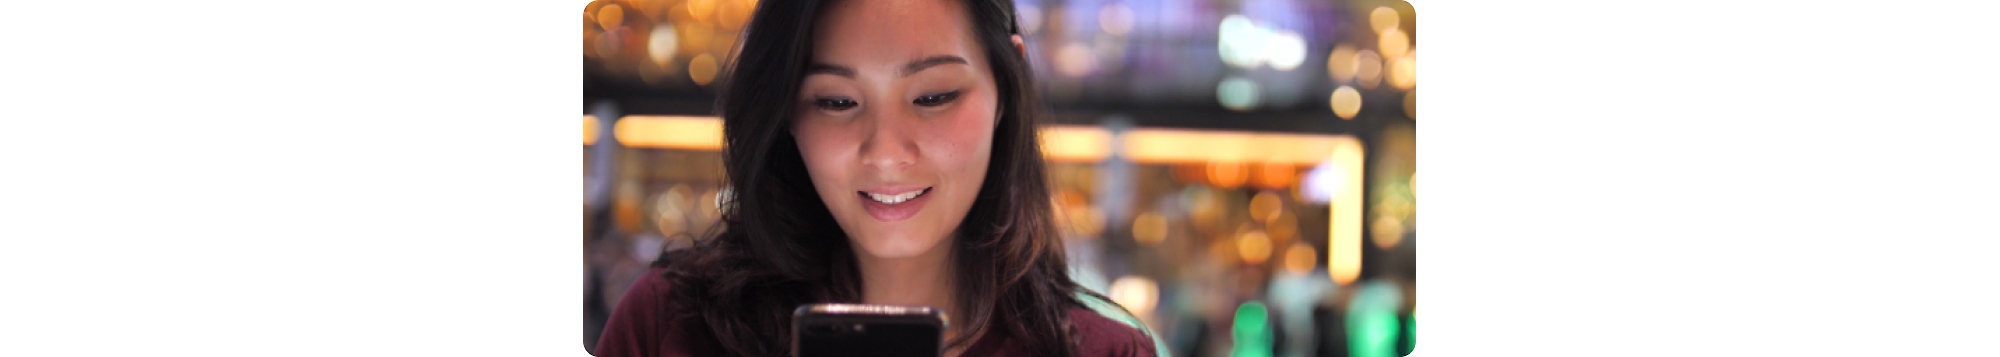 Młoda kobieta z Azji patrzy na swój telefon komórkowy.